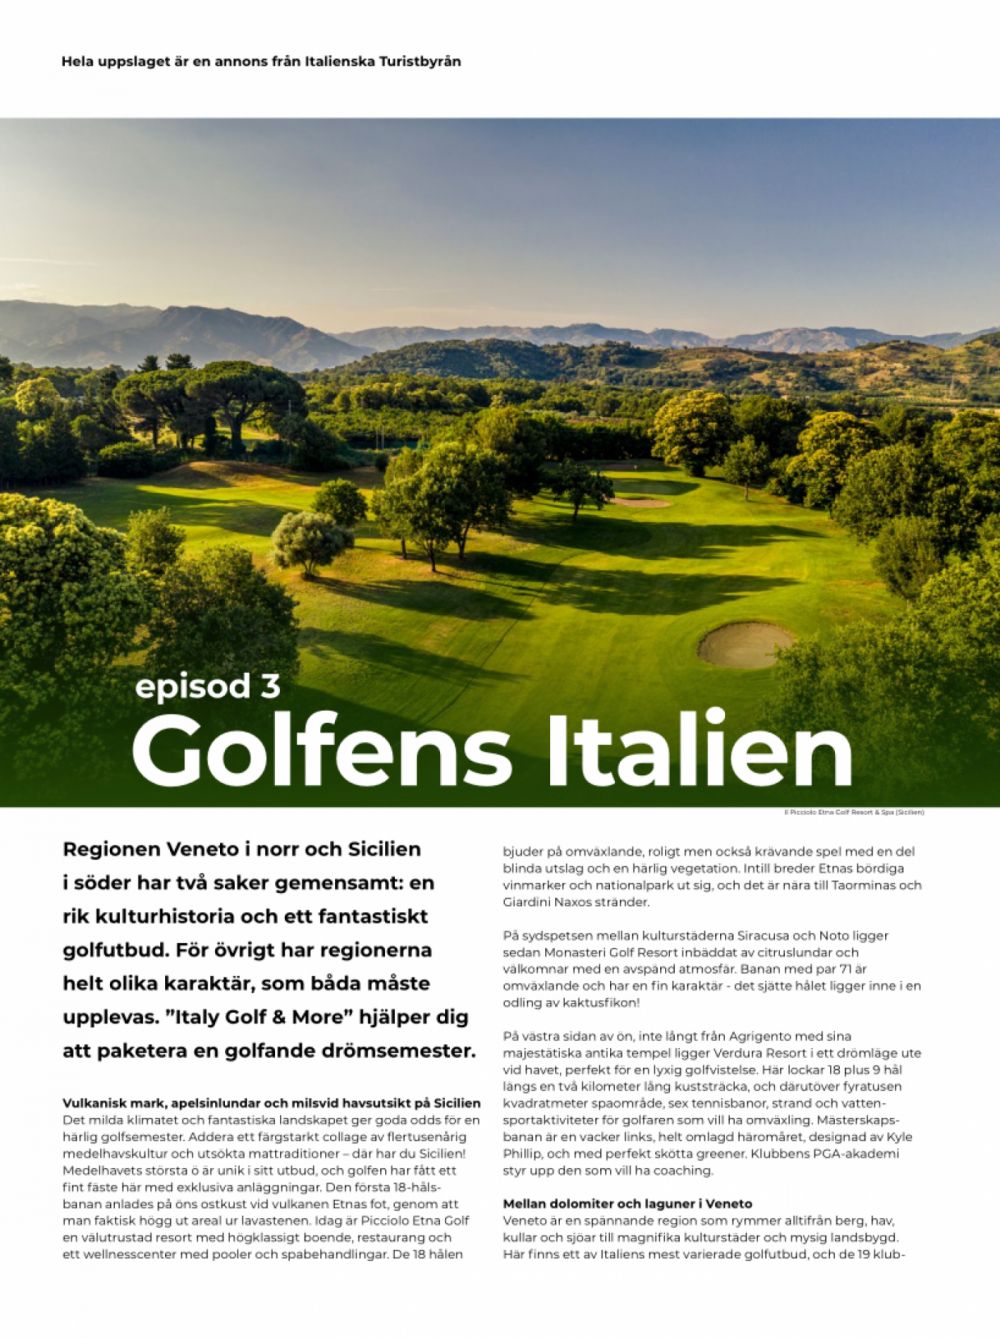 Scopriamo l'Italia golfistica - Veneto & Sicilia - Stoccolma